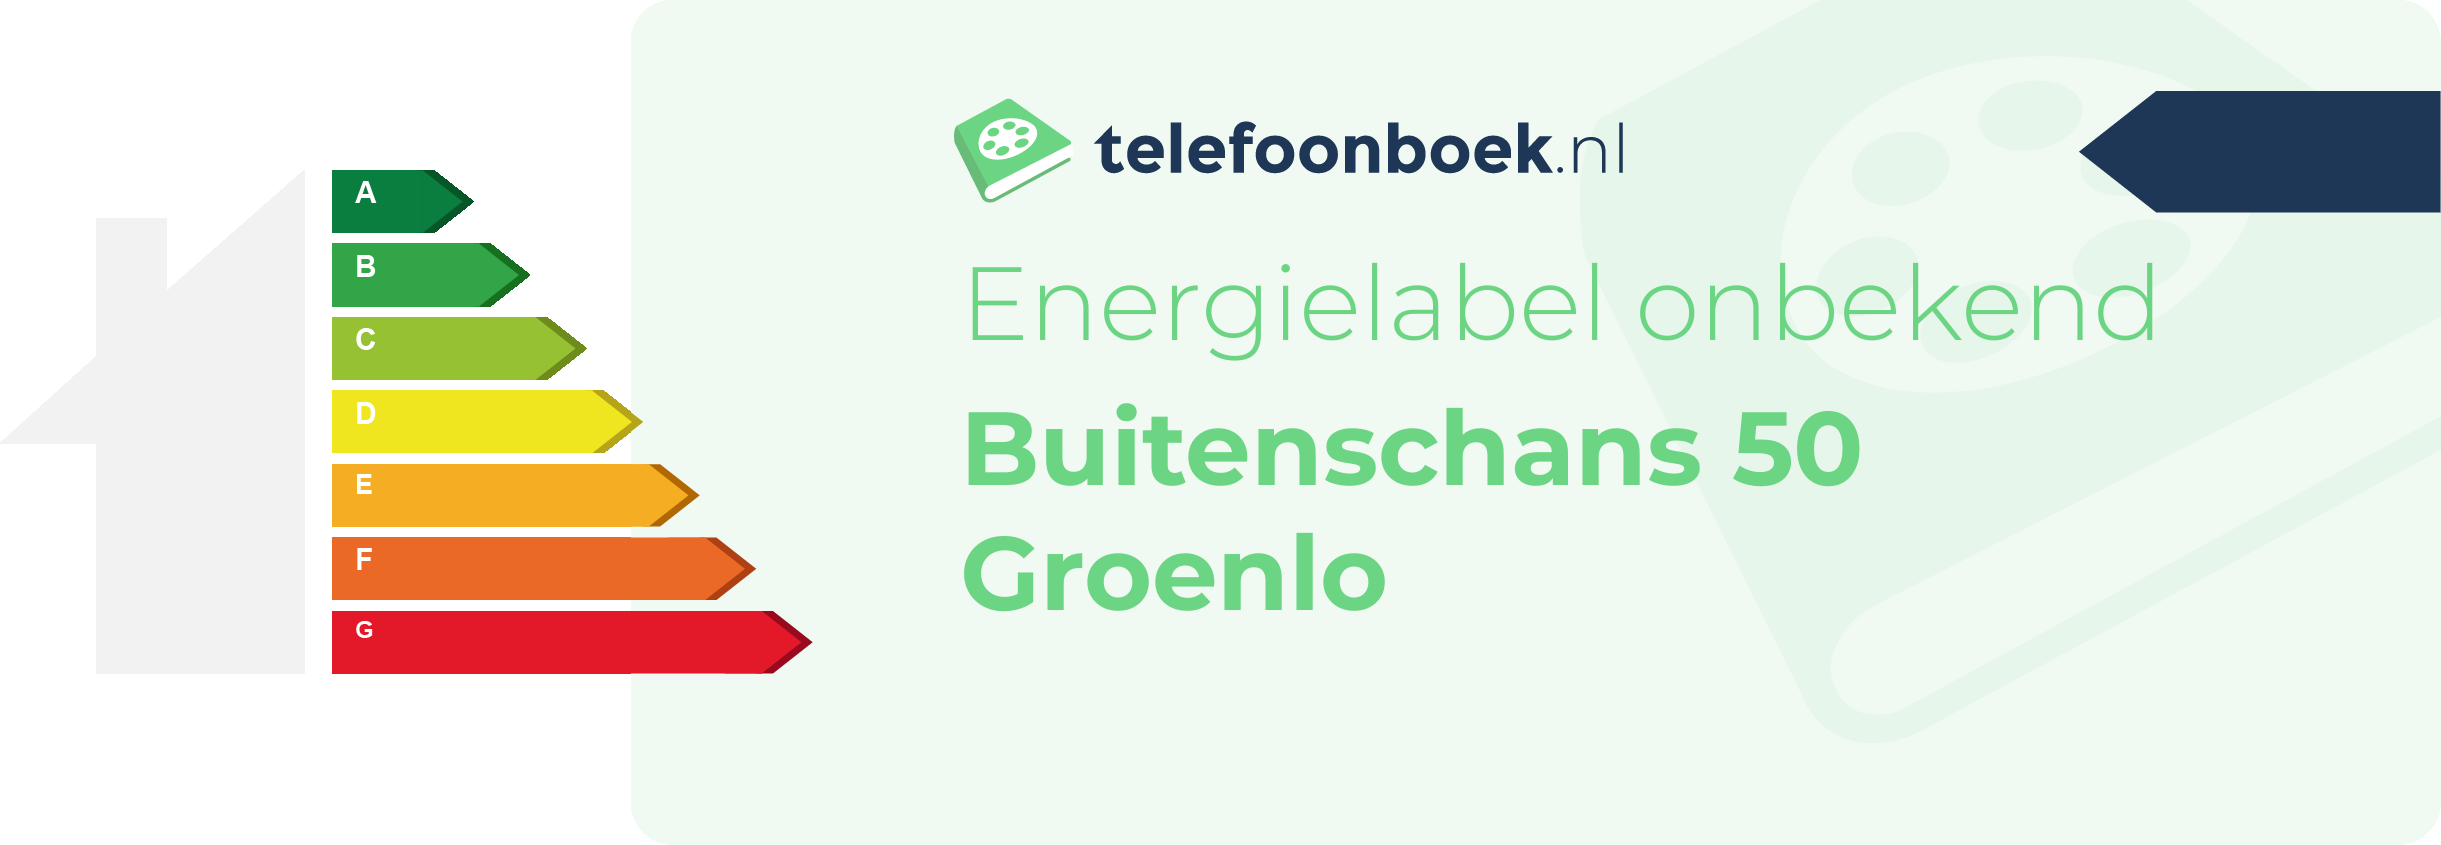 Energielabel Buitenschans 50 Groenlo